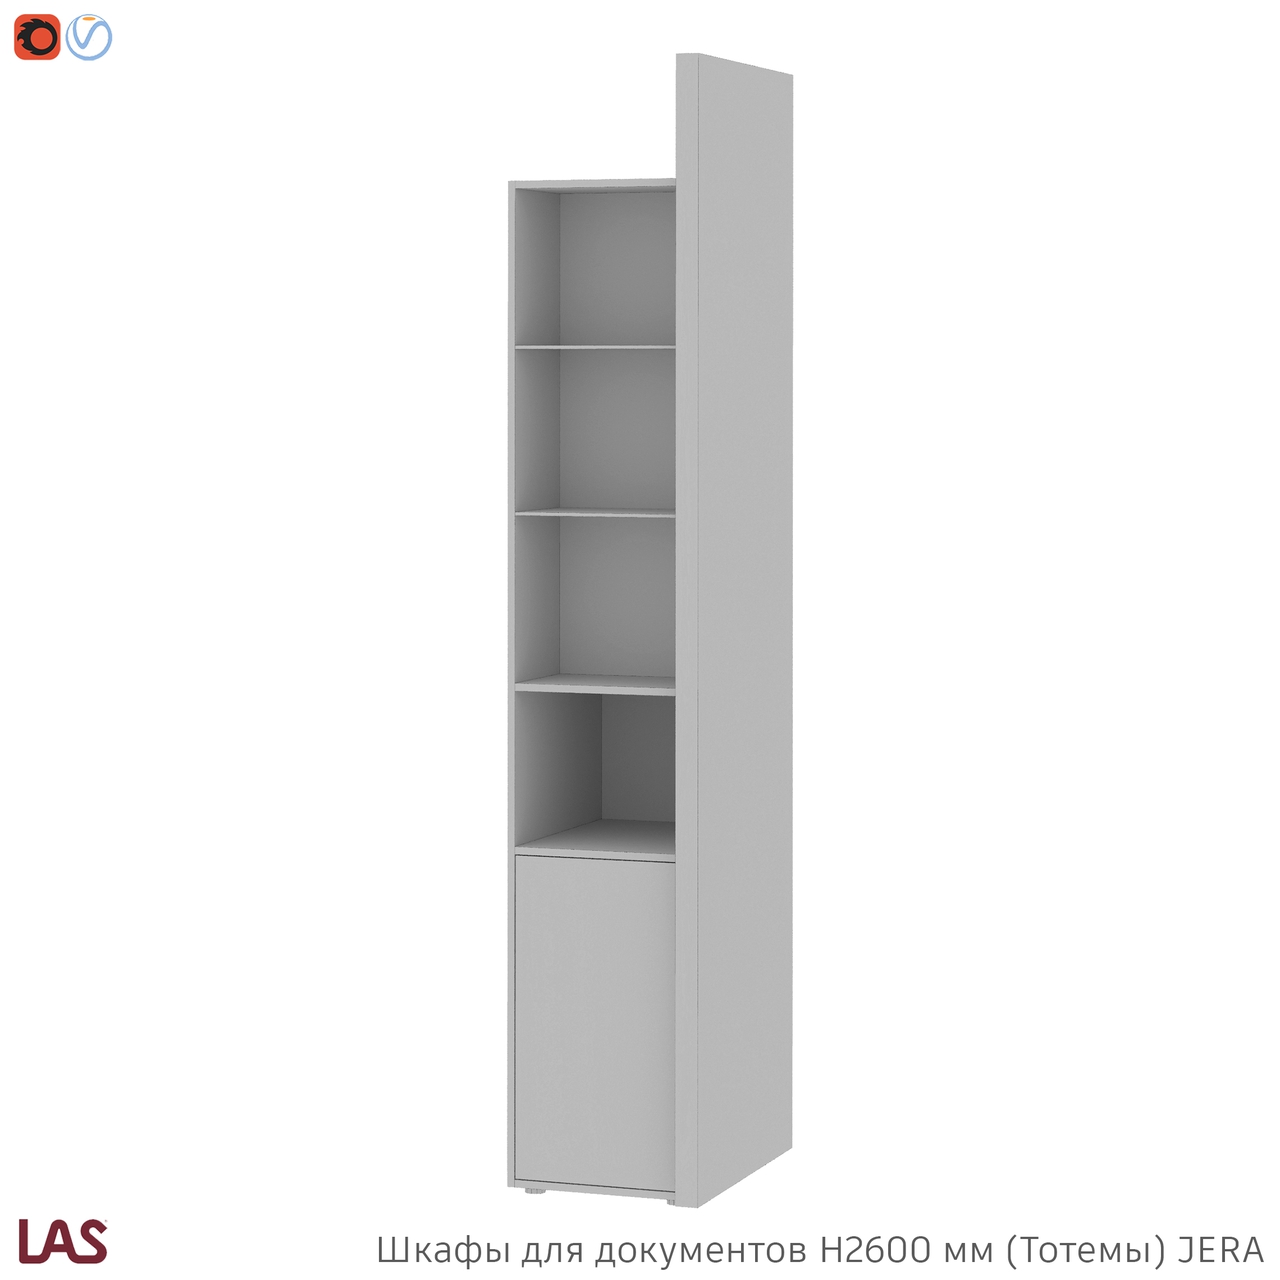 Превью G 3D-модели высоких тотемных шкафов для кабинета LAS Jera 159968